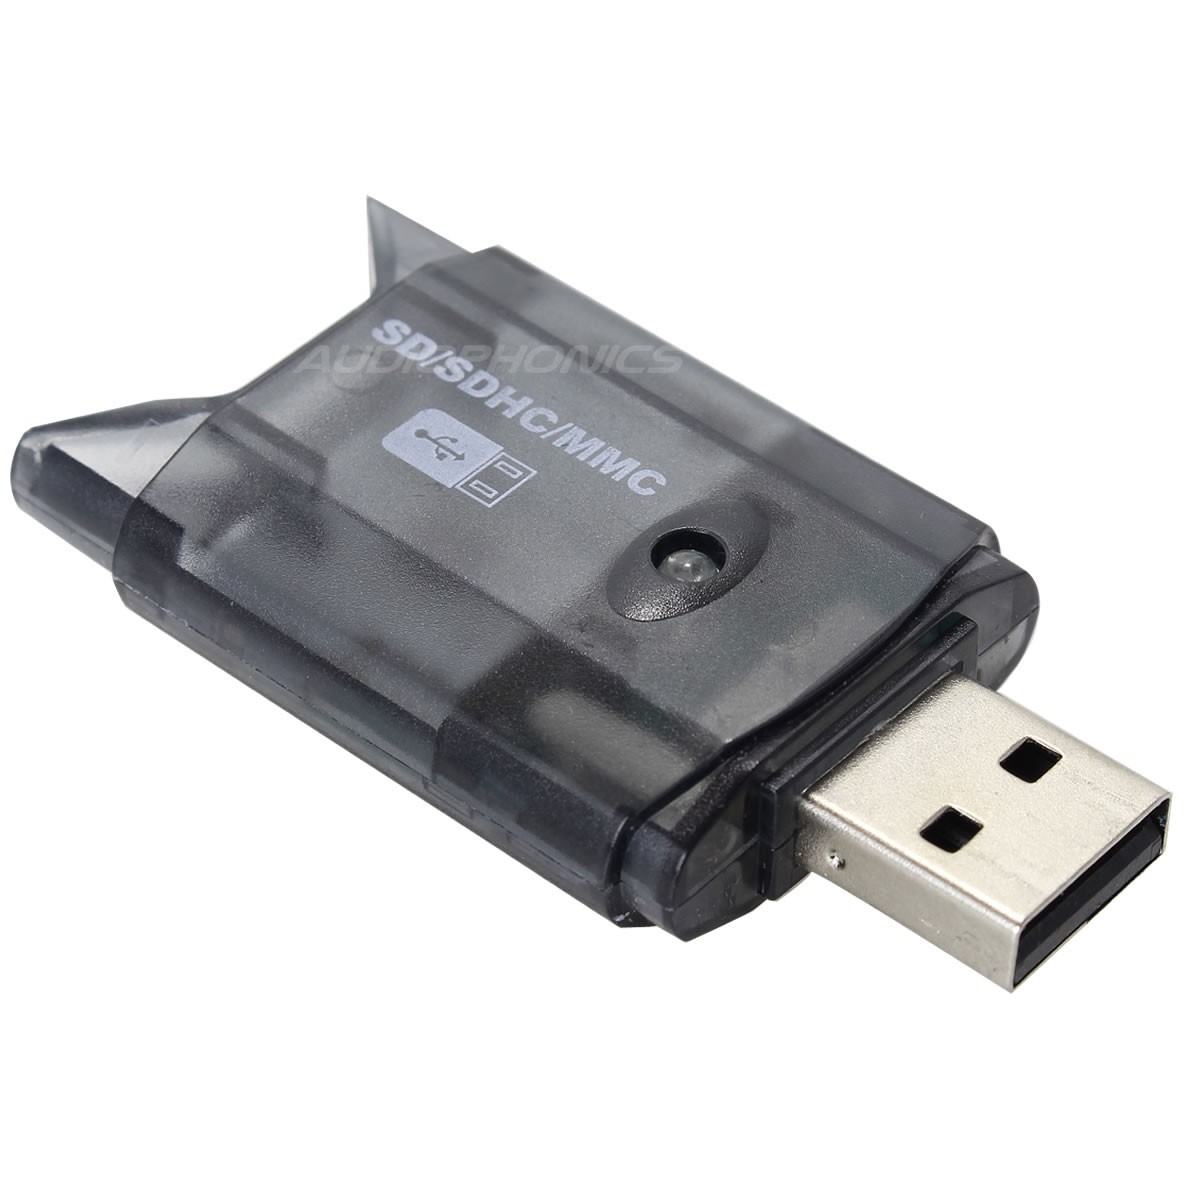 Lecteur de carte USB 2.0 vers SD / SDHC / MMC / RSMMC